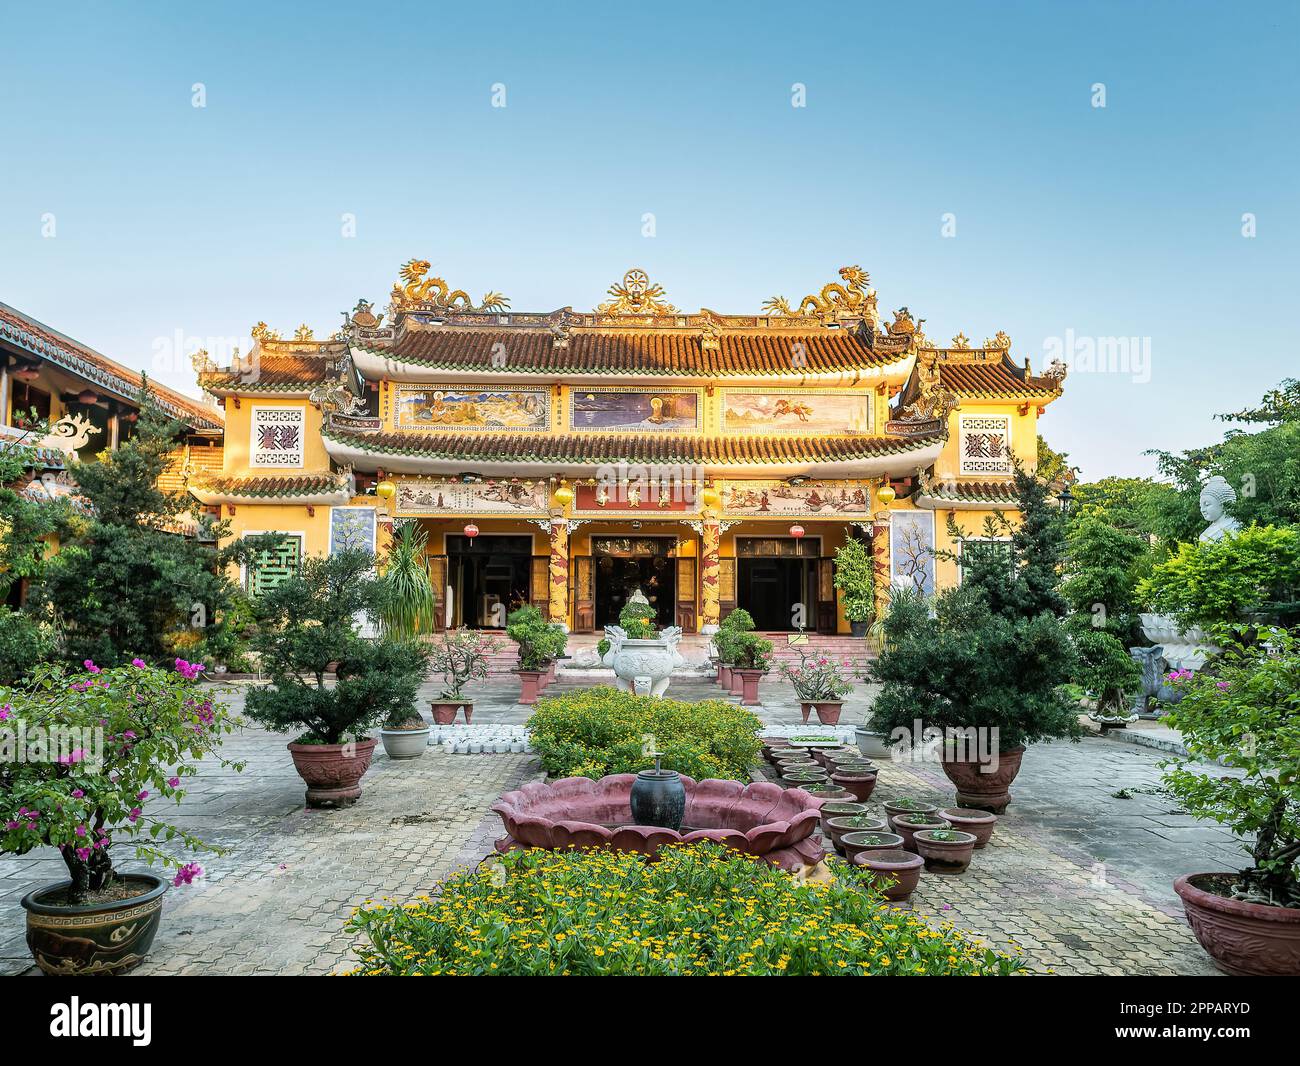 Le temple de Phap Bao à Hoi an, province de Quang Nam, Vietnam. La vieille ville de Hoi an est un site classé au patrimoine mondial, et célèbre pour son bâtiment bien conservé Banque D'Images